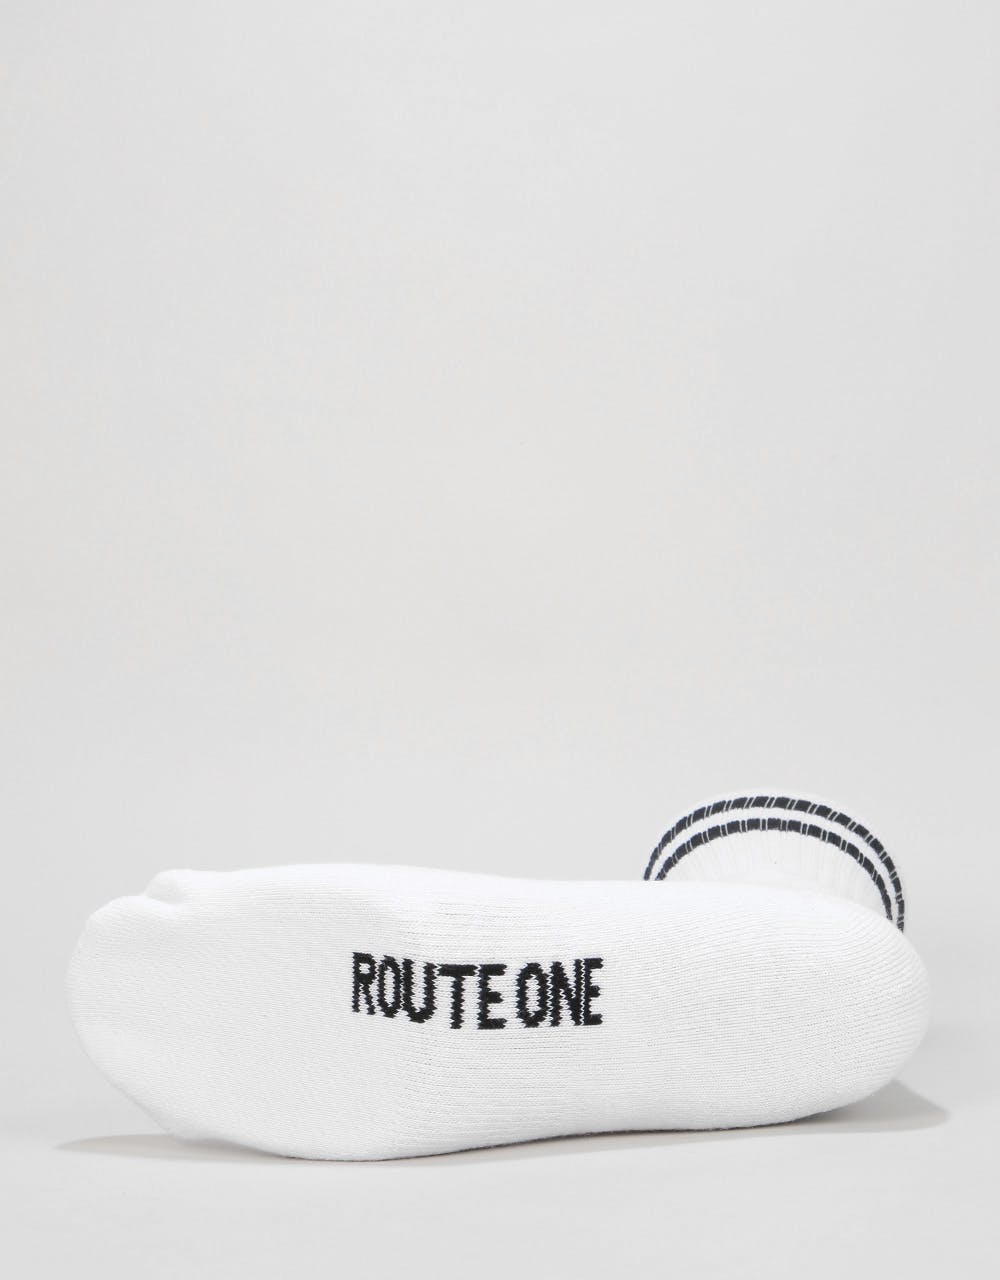 Route One Underwear Gift Set - Black